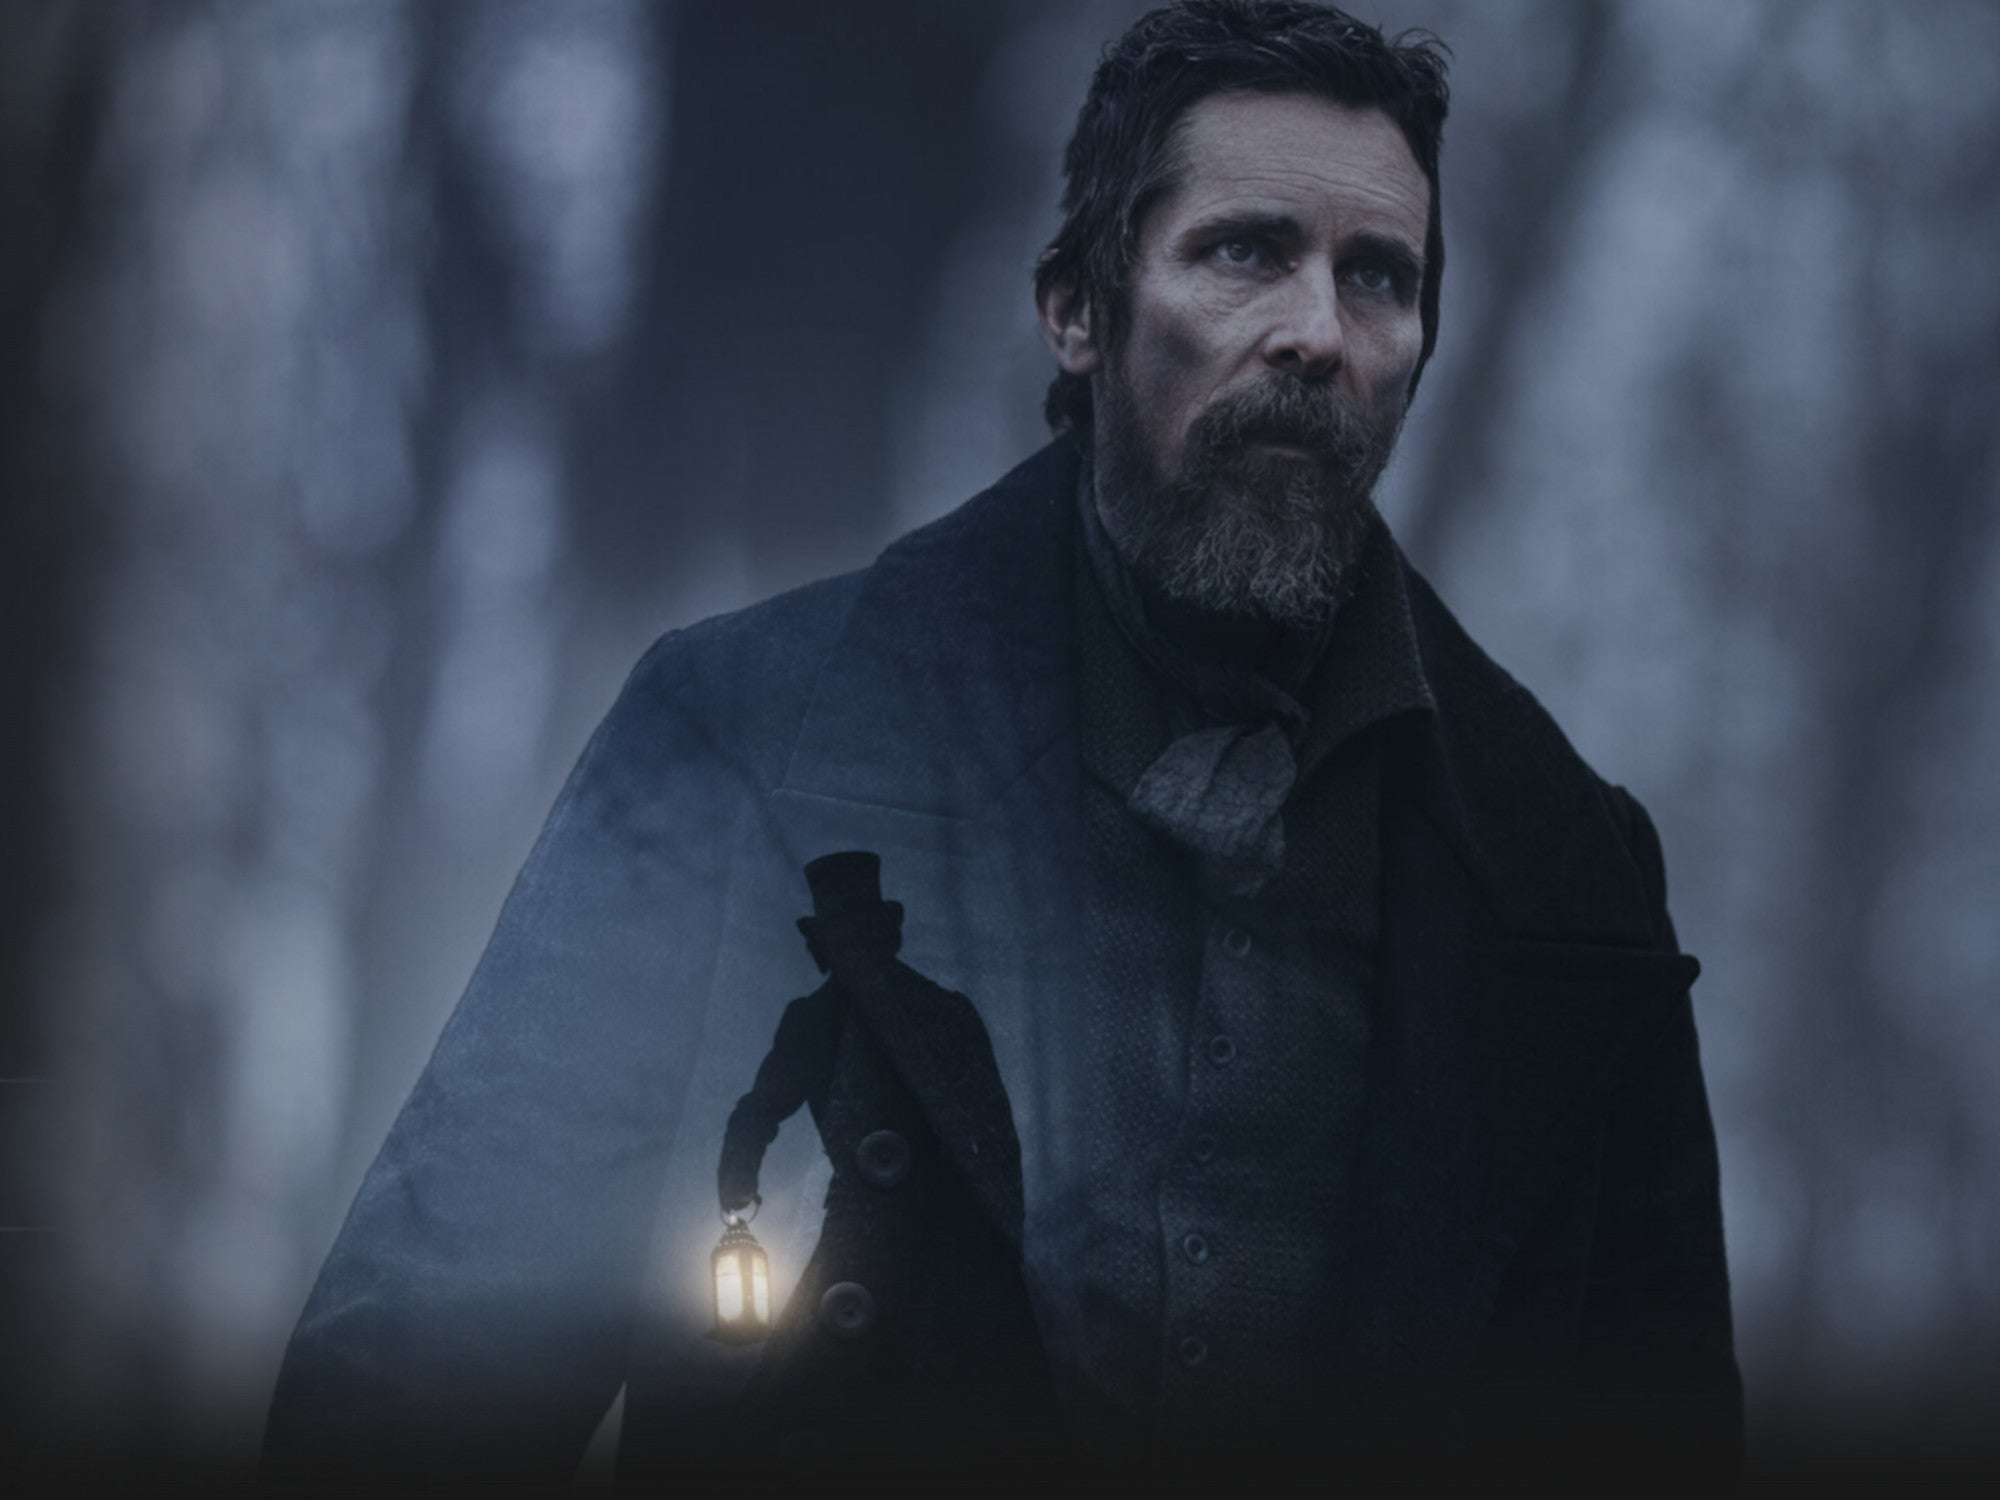 #Jetzt bei Netflix: Düsterer, rätselhafter Detektivfilm mit Christian Bale in der Hauptrolle